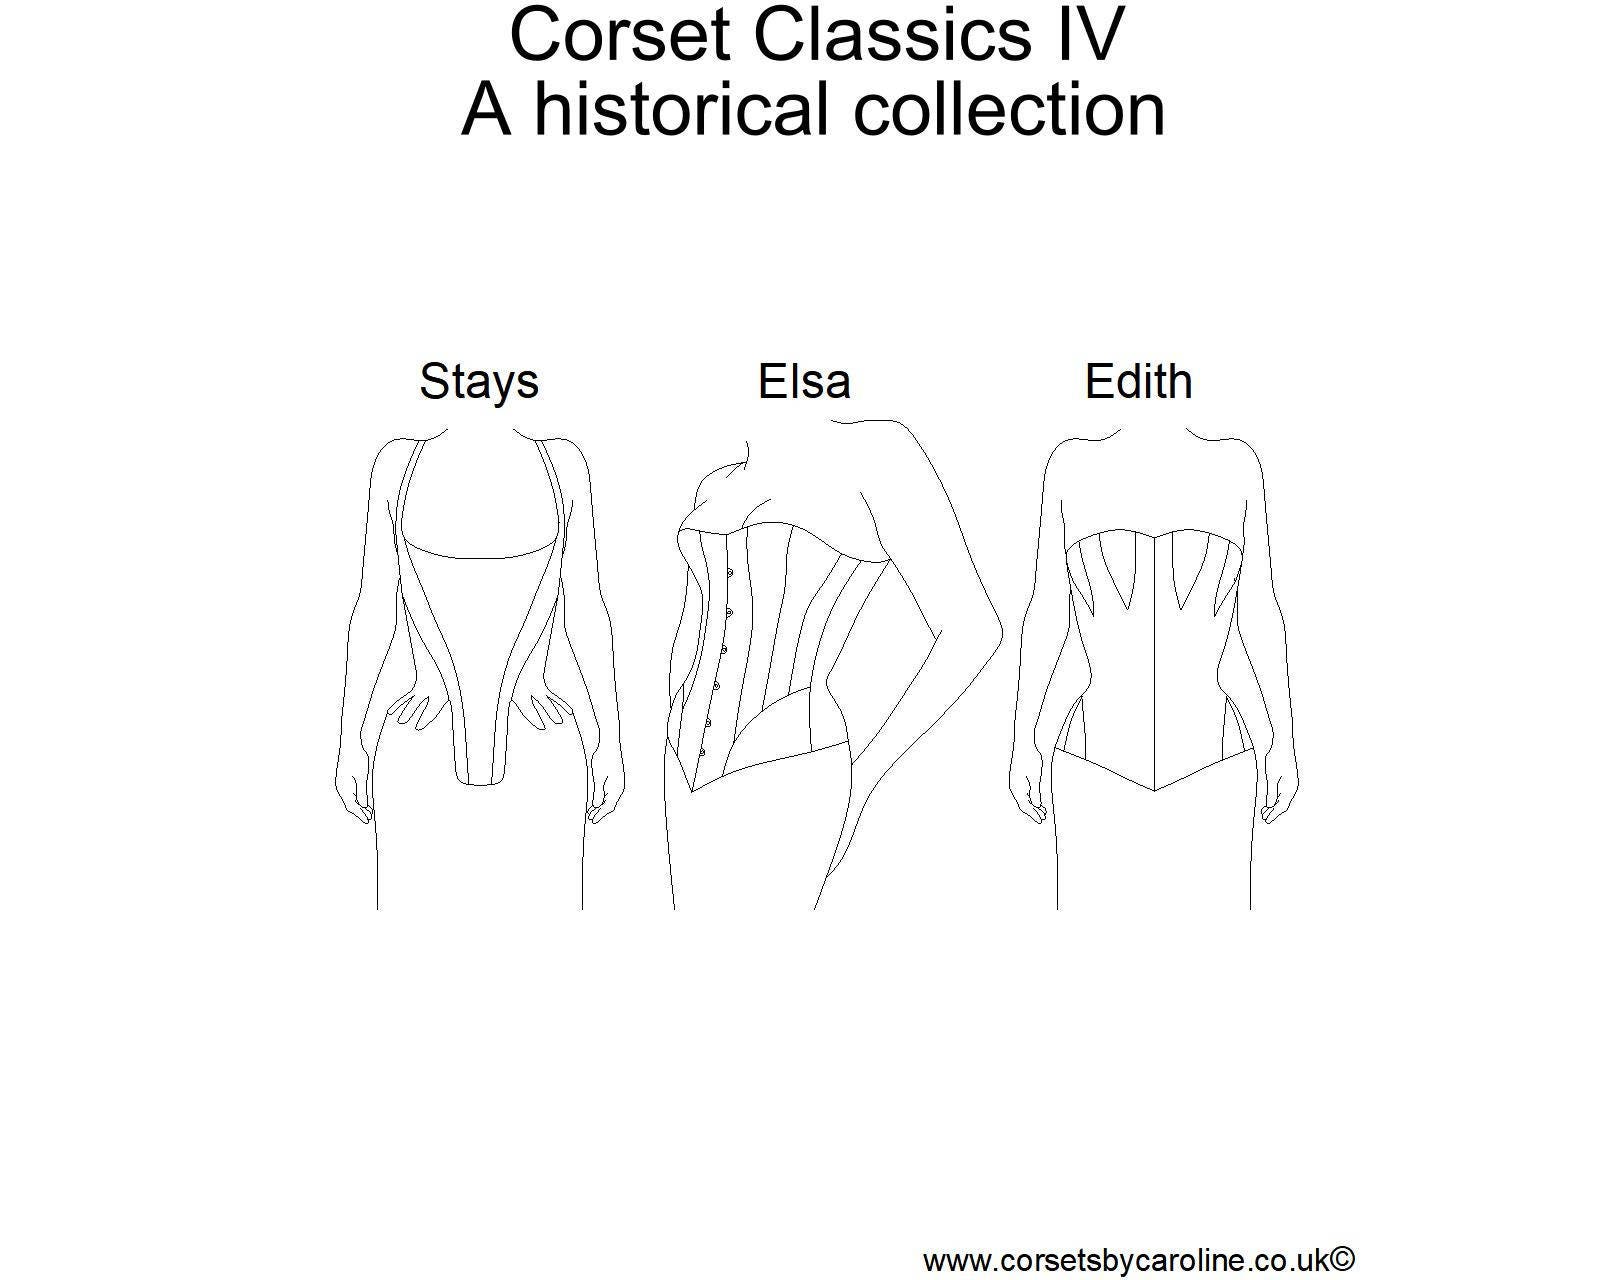 Corset Classics VI - a collection of more advanced designs